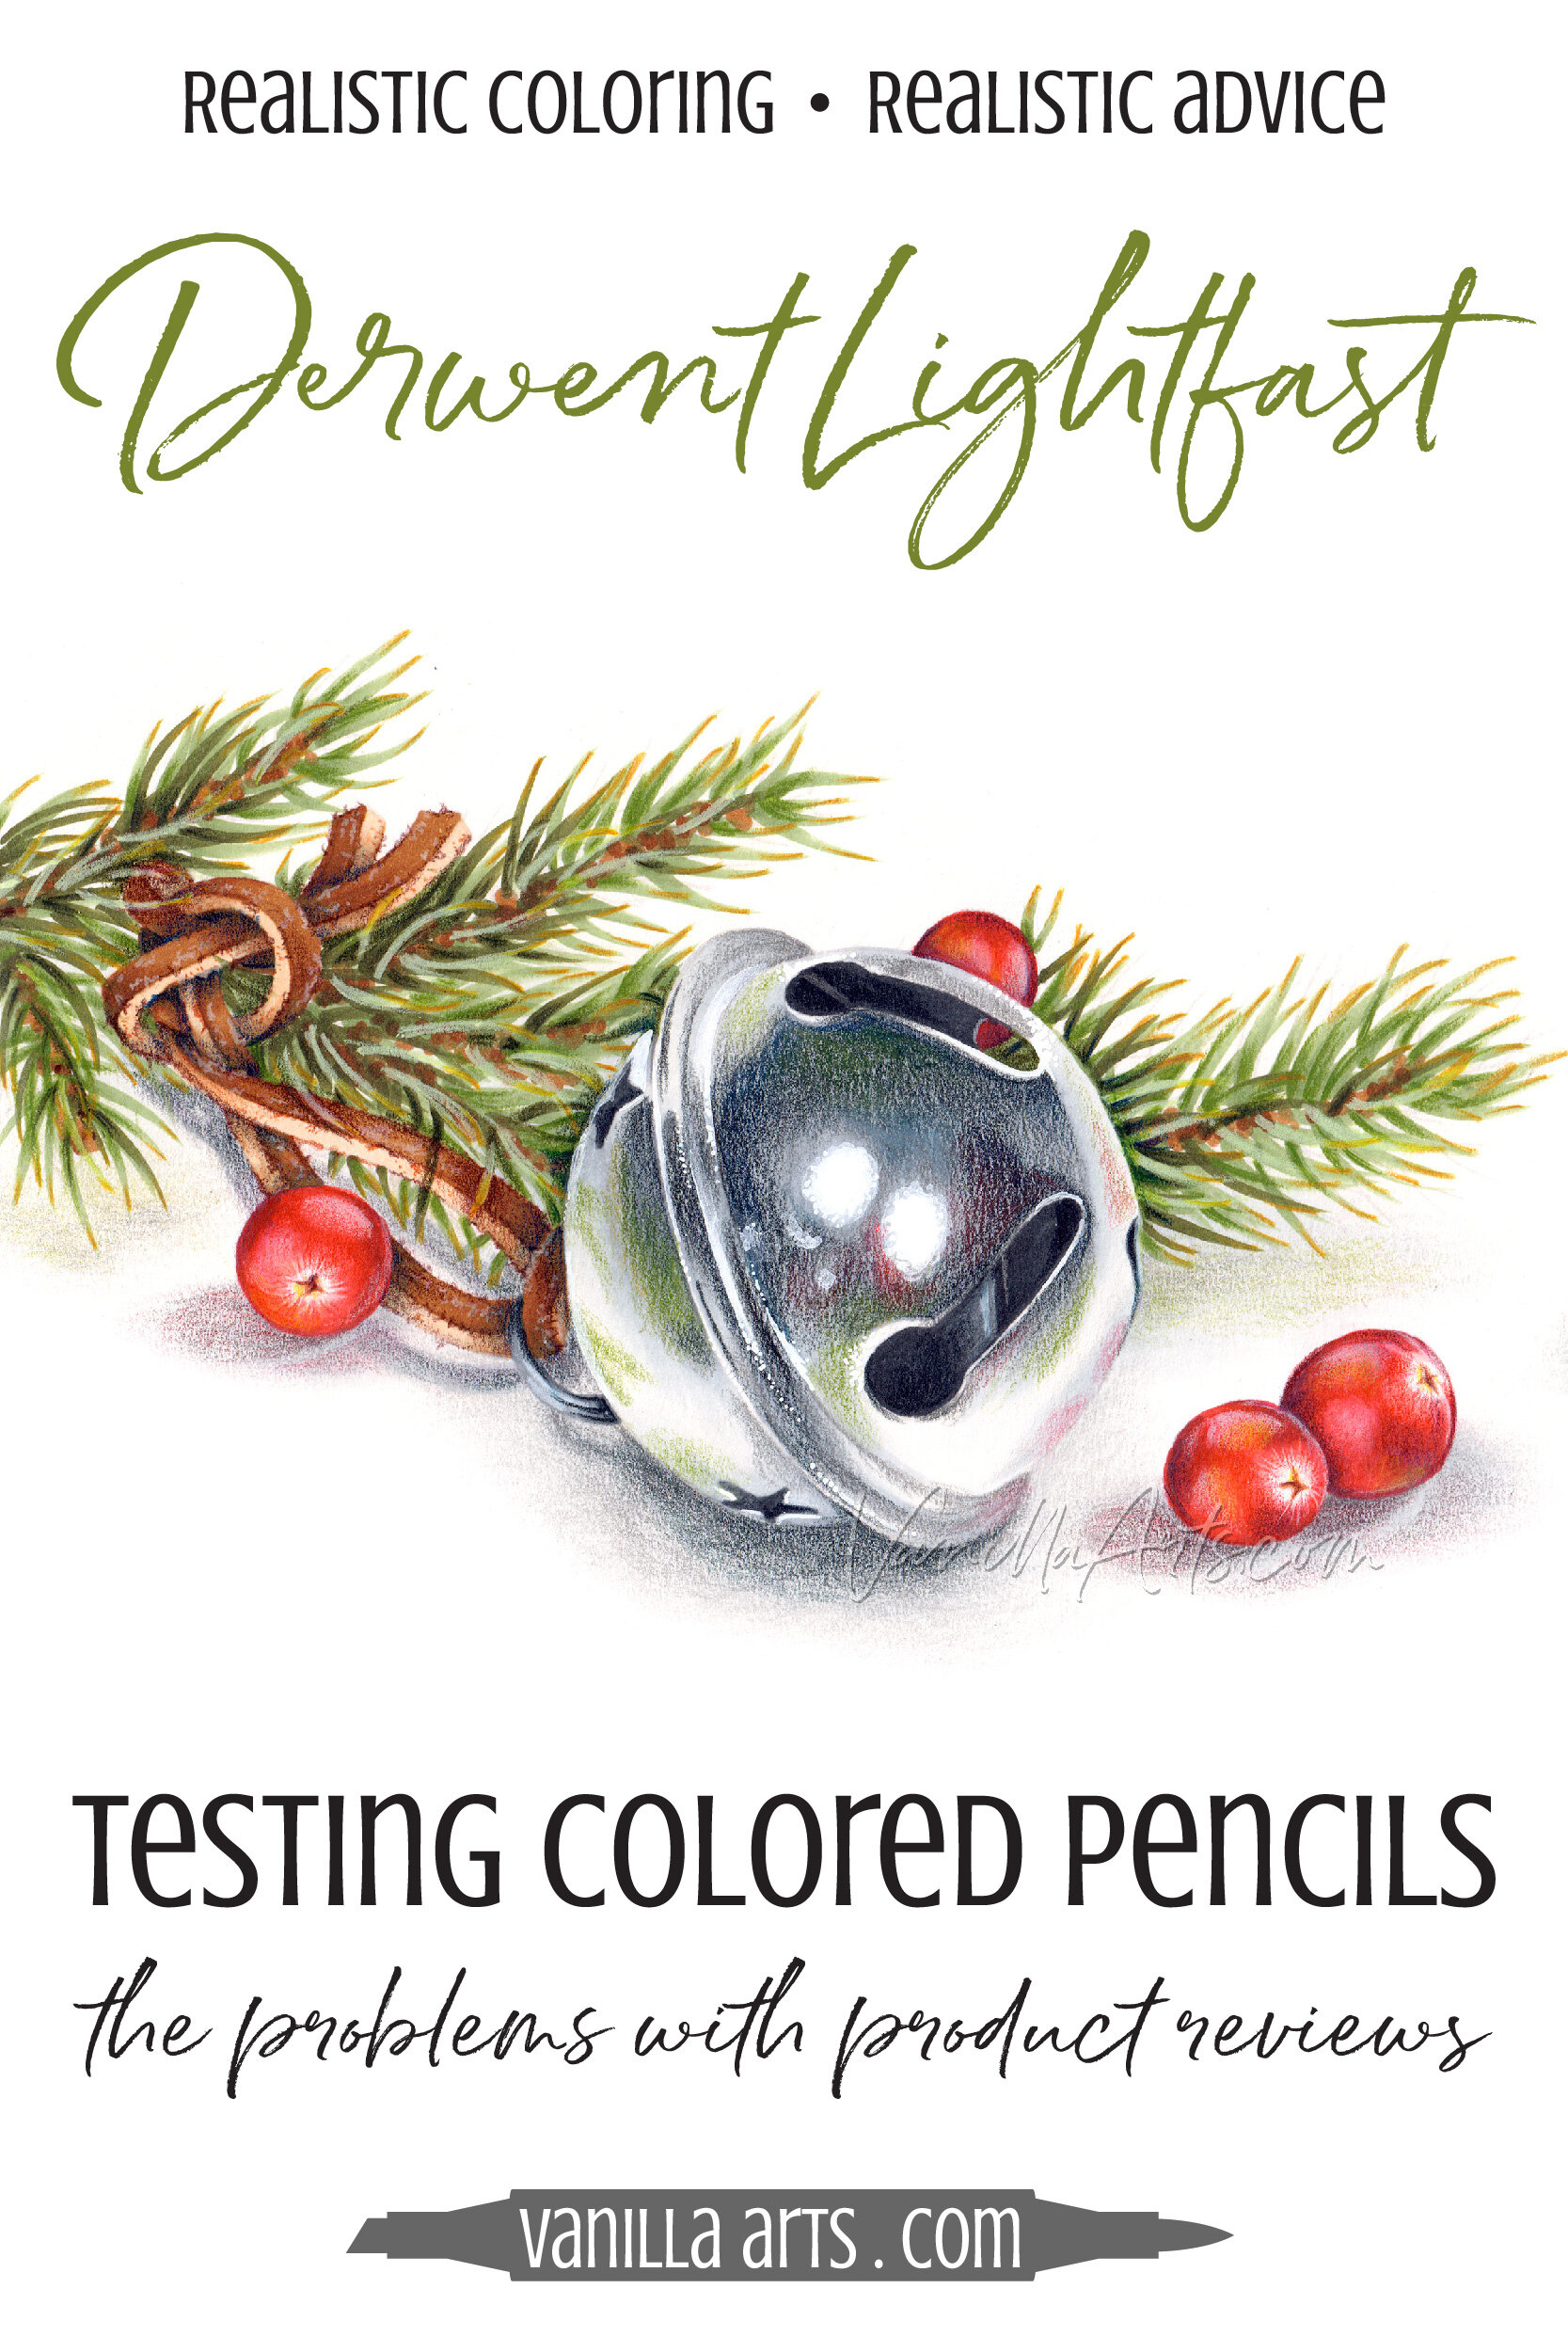 Derwent Studio Colored Pencils Review